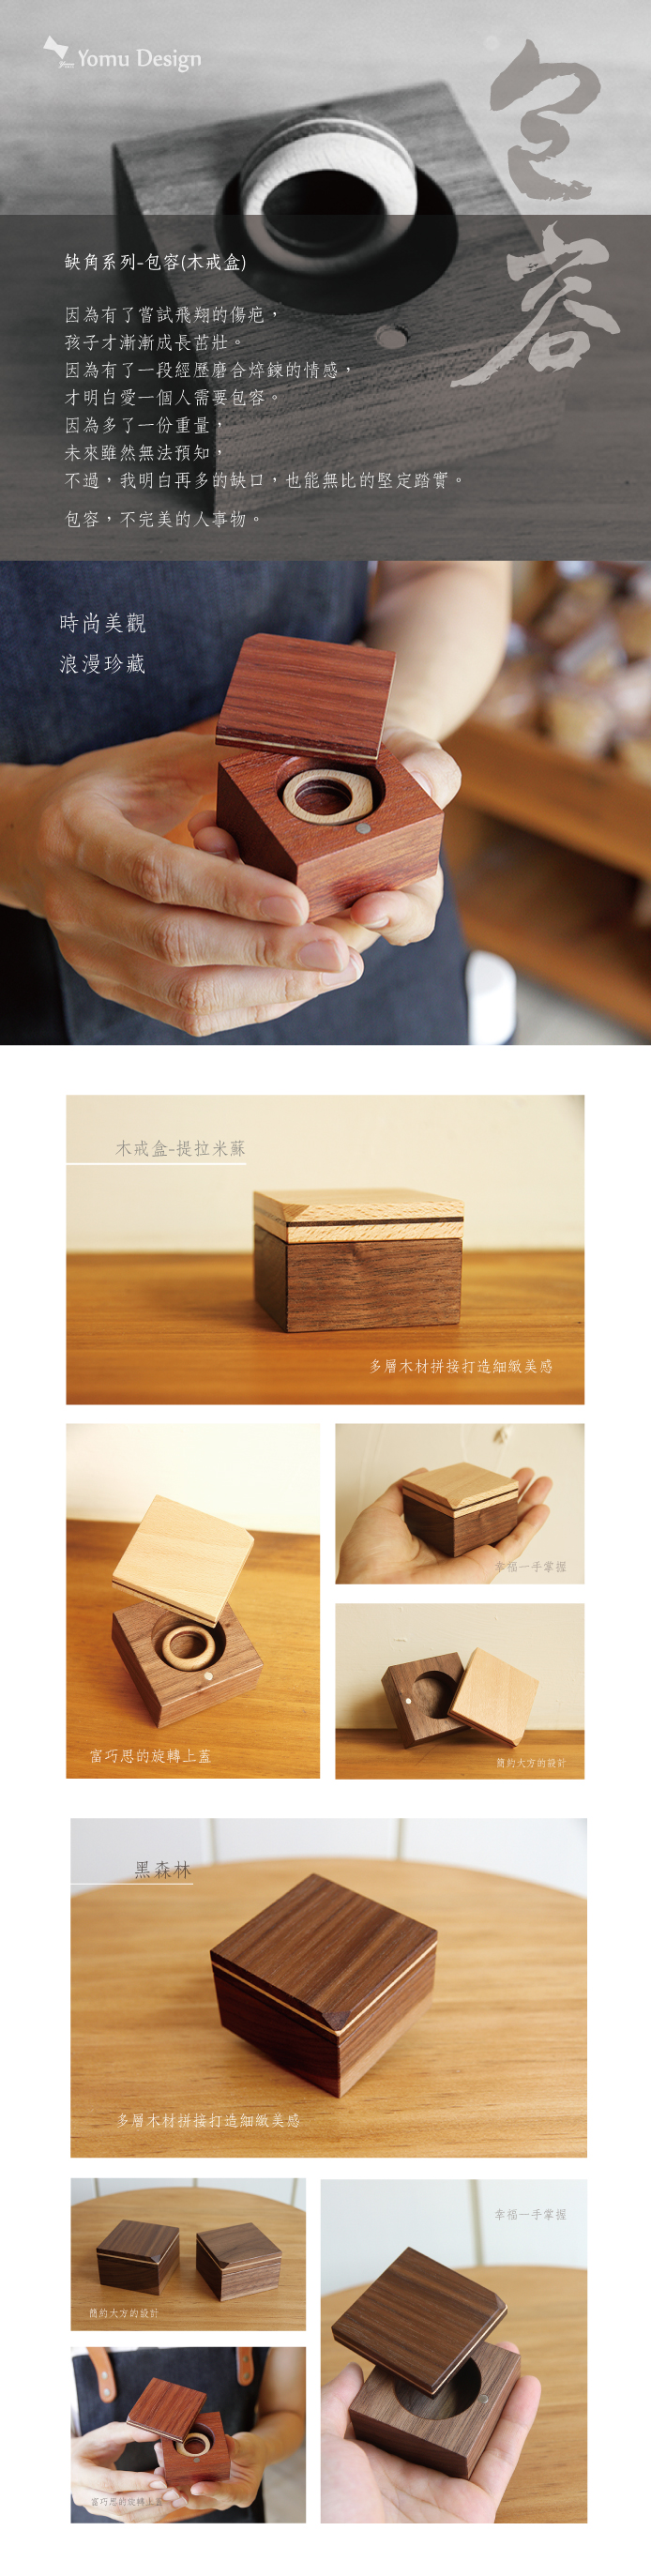 木戒盒形象說明圖